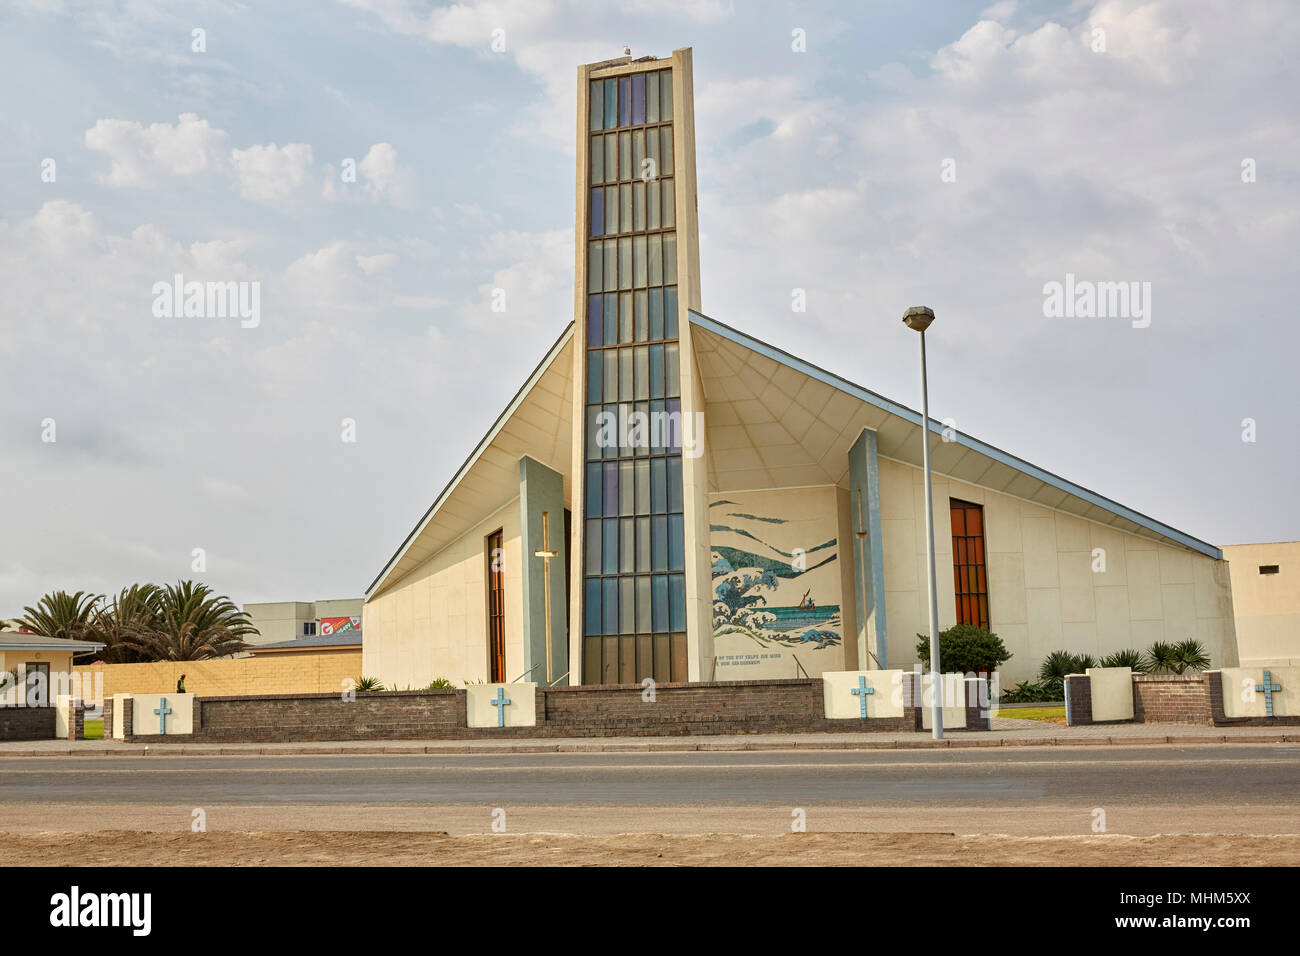 La madre Iglesia Reformada Holandesa y Hall en Walvis Bay, Namibia, África Foto de stock